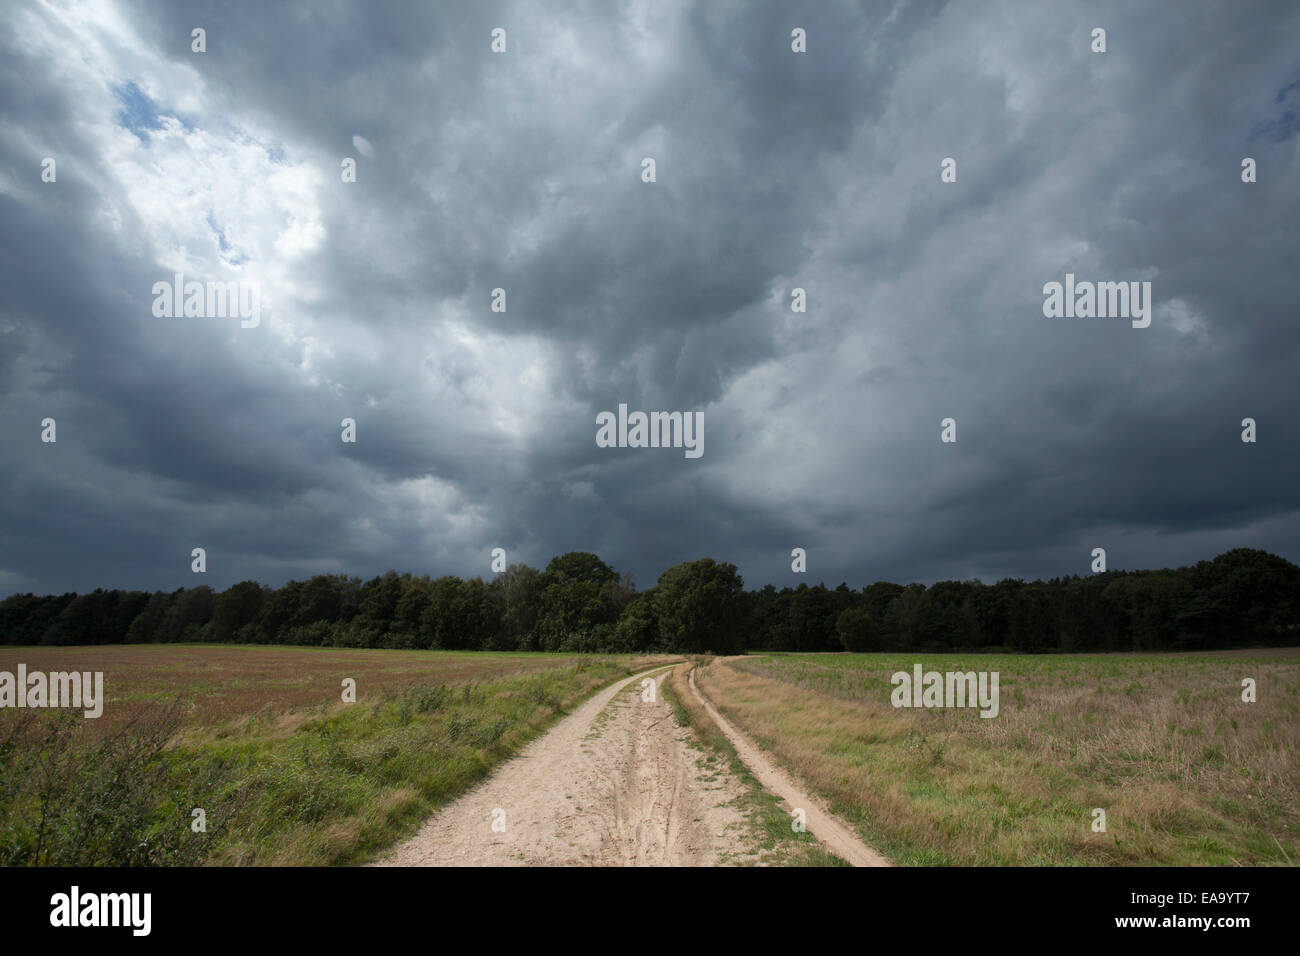 Paisaje con un cielo amenazador y nubes oscuras Foto de stock